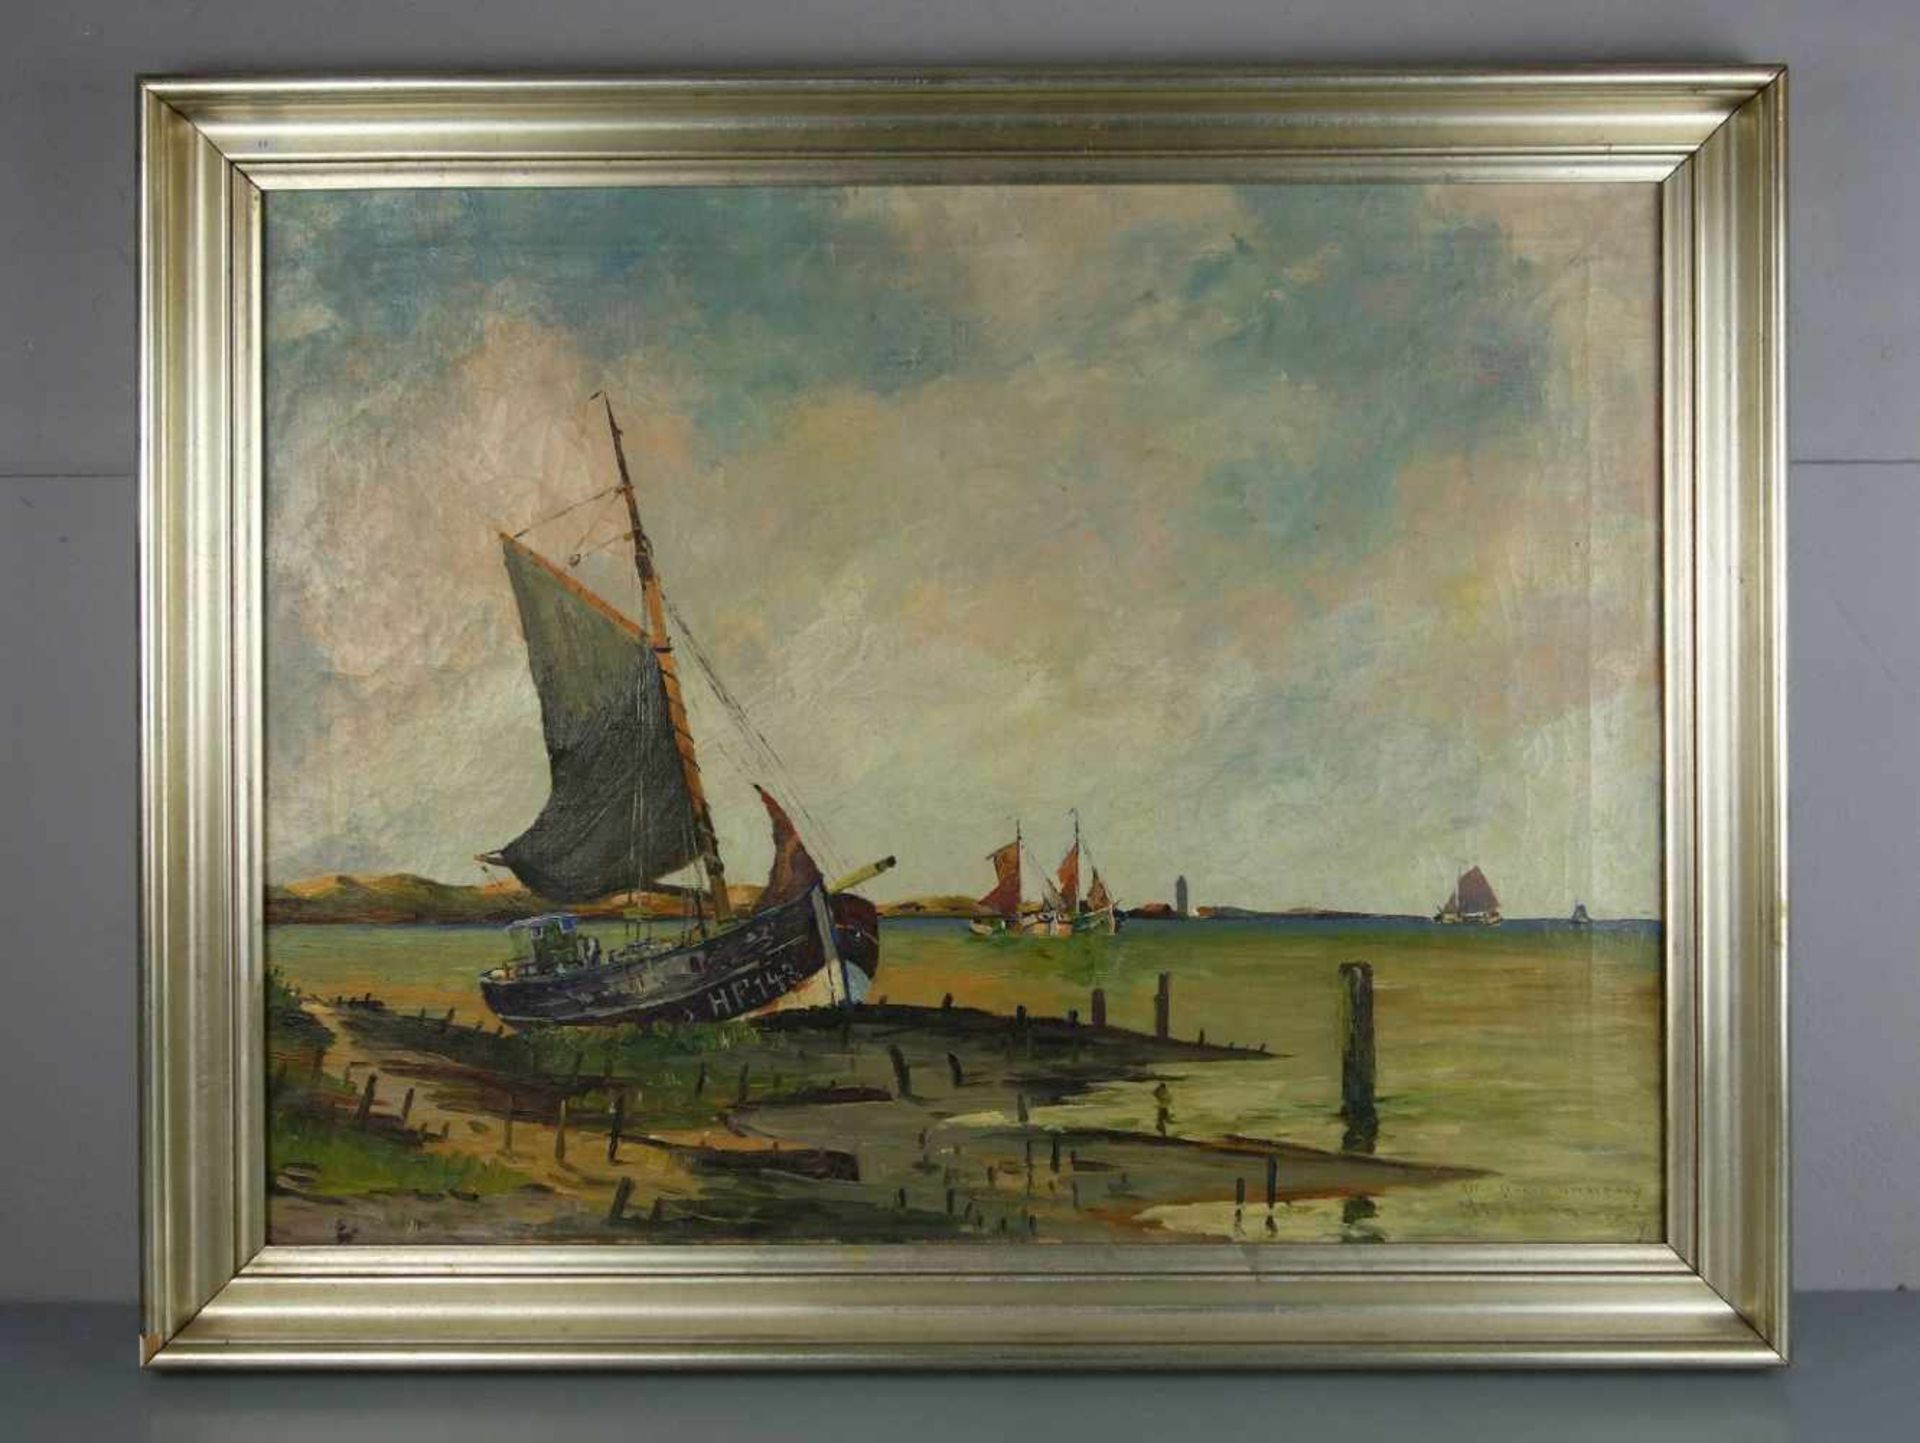 MINDERMANN, HEINZ (Bremen 1872-1959 Norderney), Gemälde / painting: "Alter Hafen Norderney", Öl